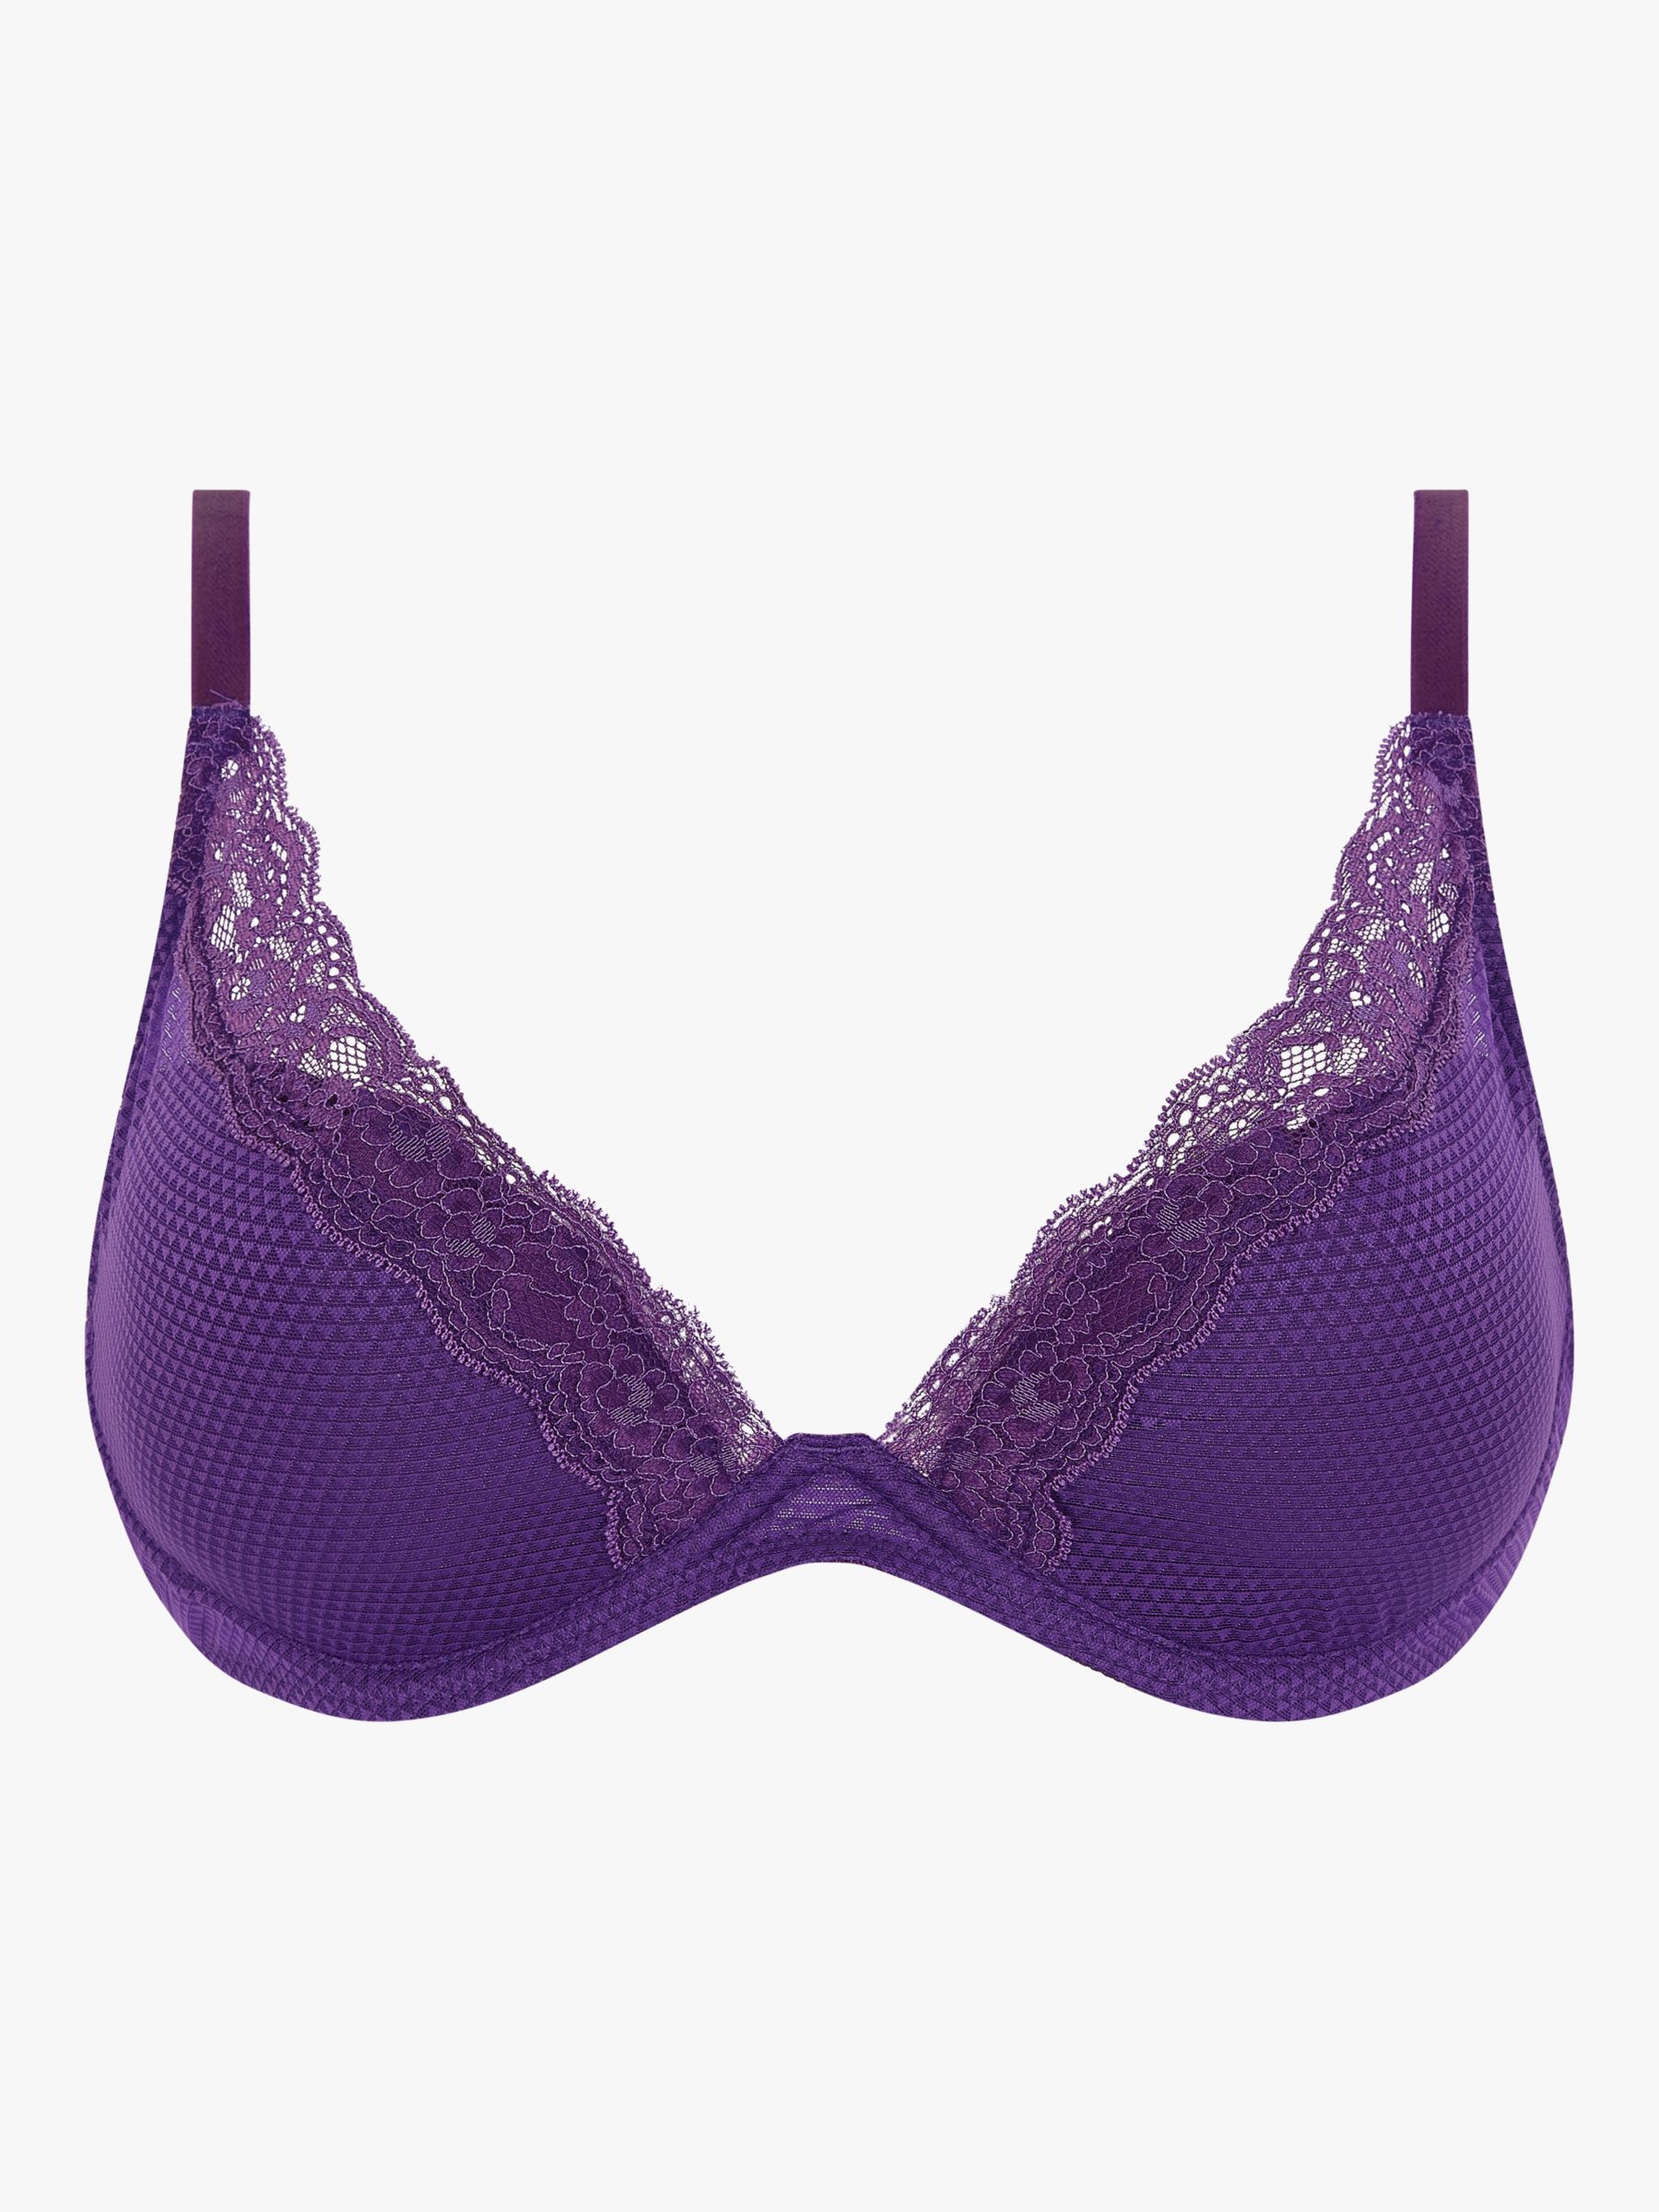 Passionata Sexy Fashion Plunge T Shirt Bra Purple: Wild Berry (Dark Purple)  - Chantilly Online